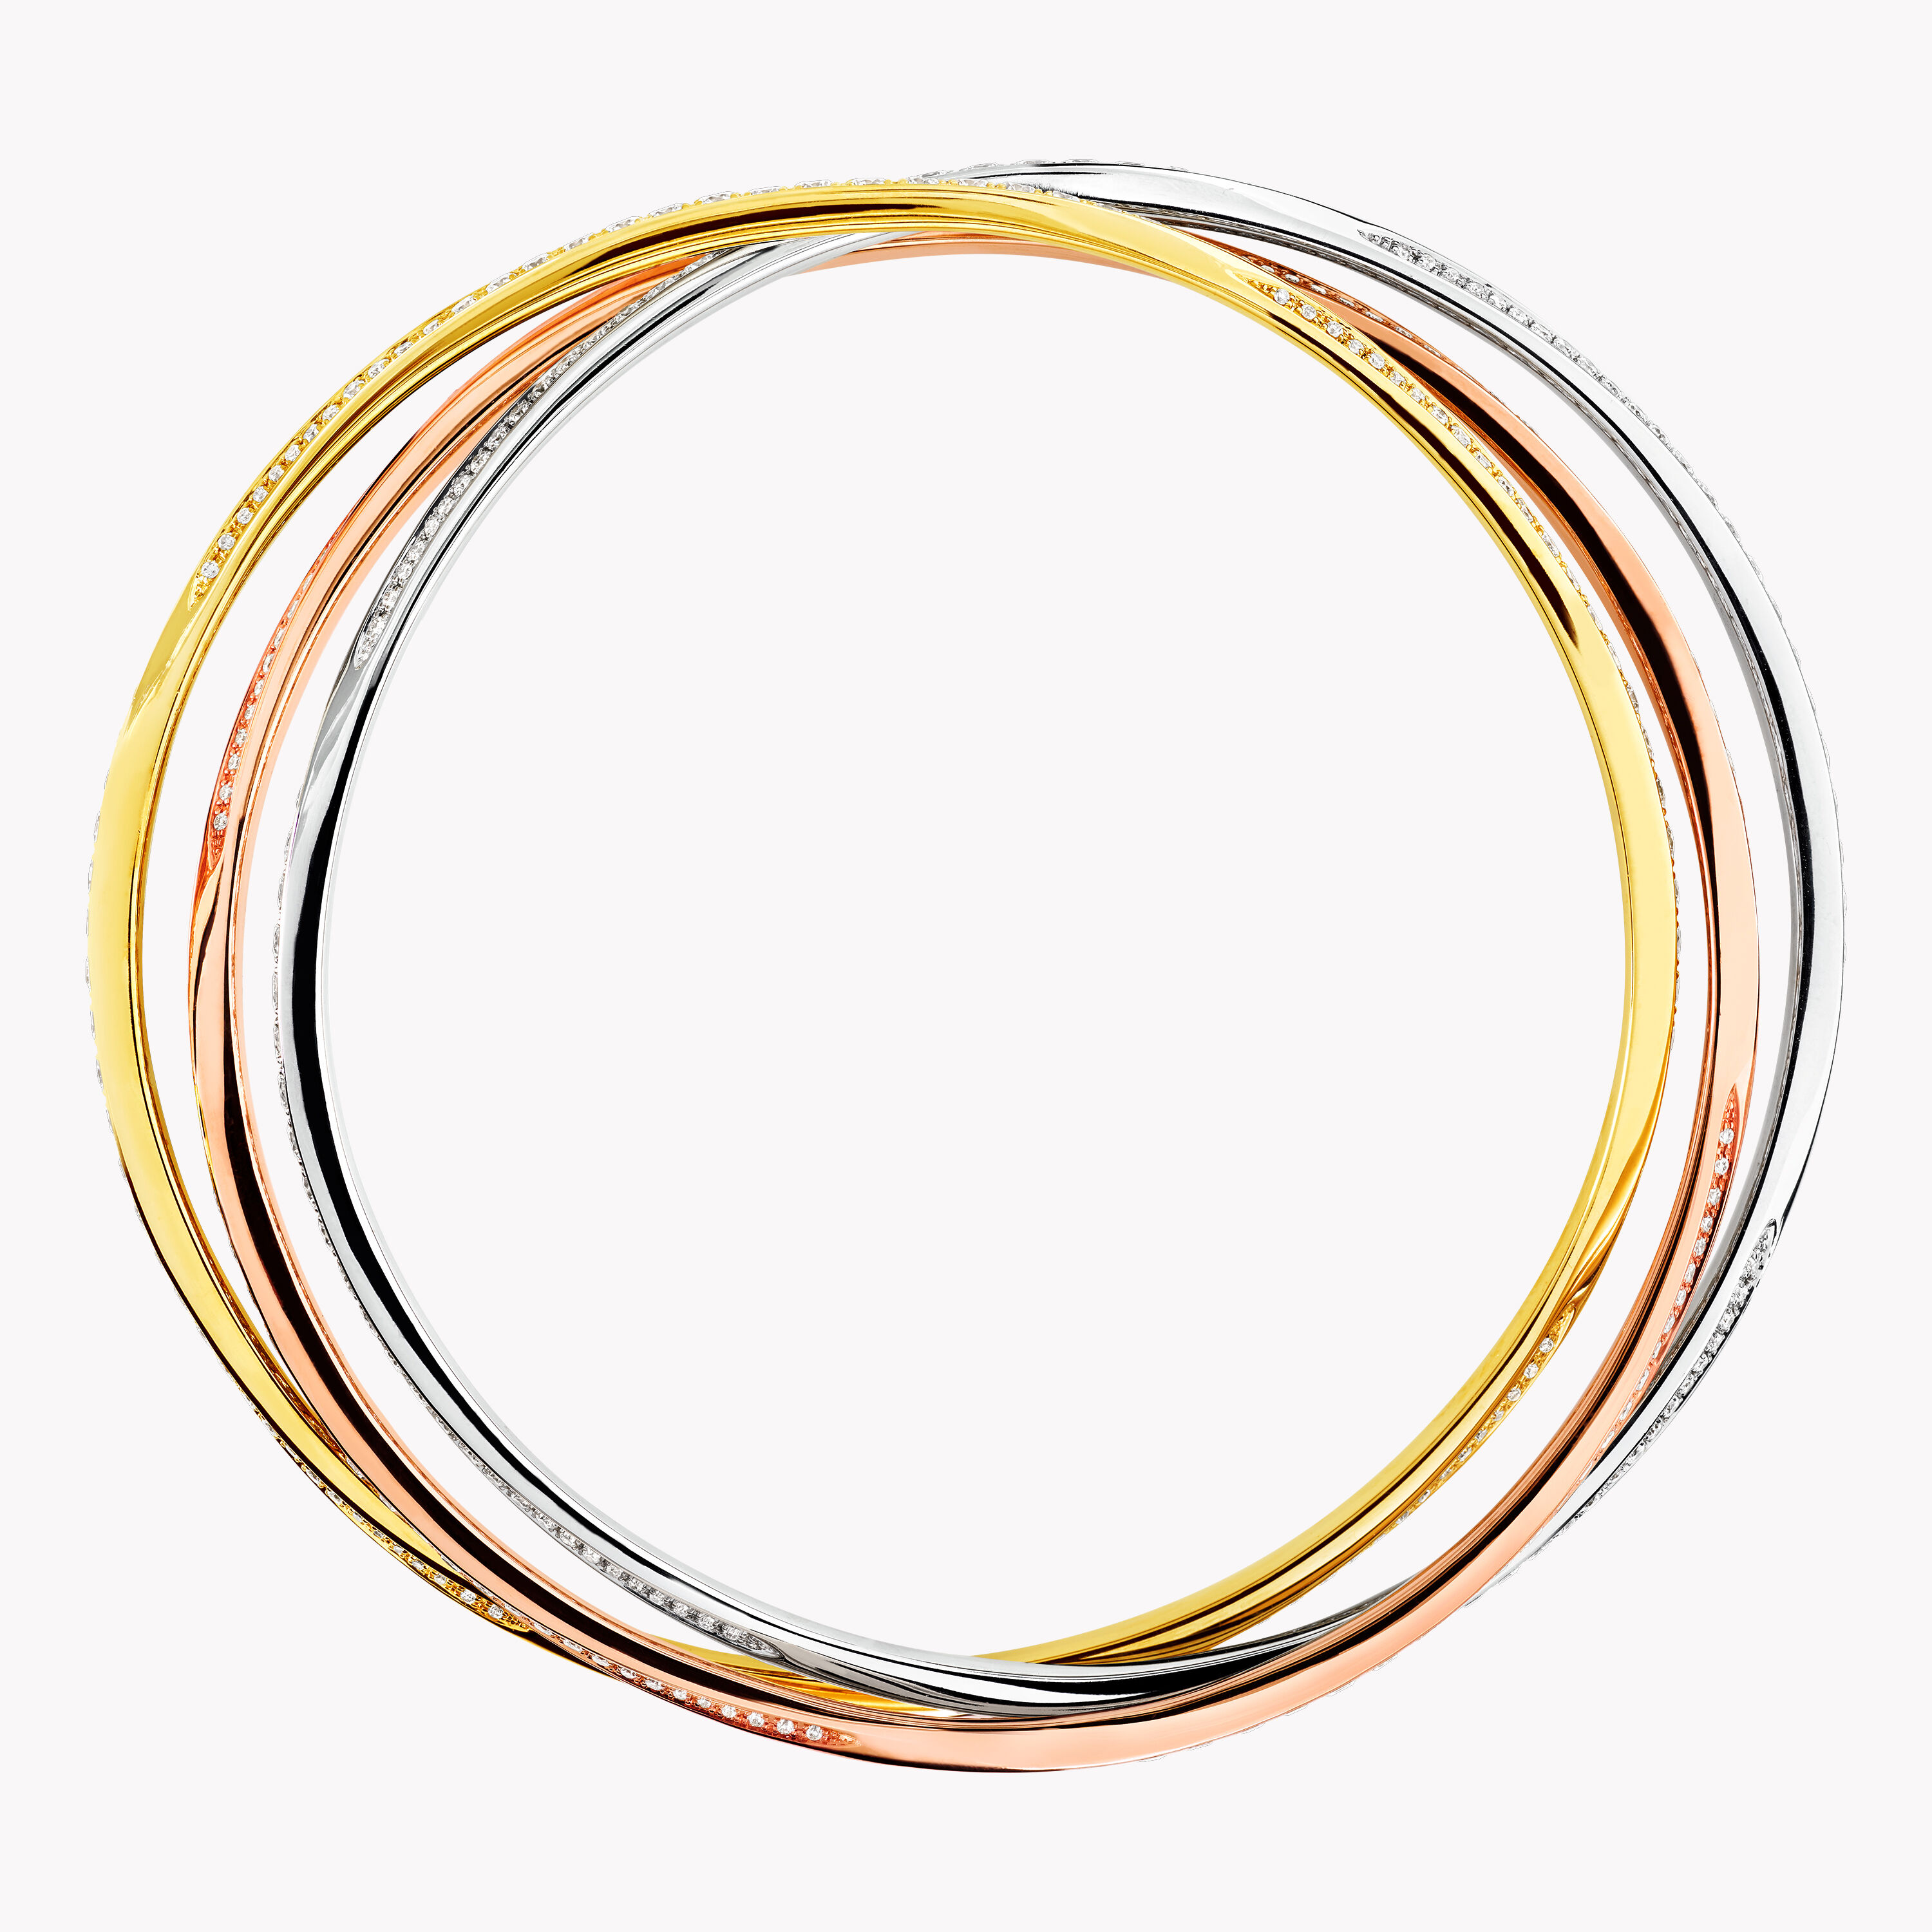 Triple Spiral Pavé Diamond Bangle, white, yellow & rose gold | Graff